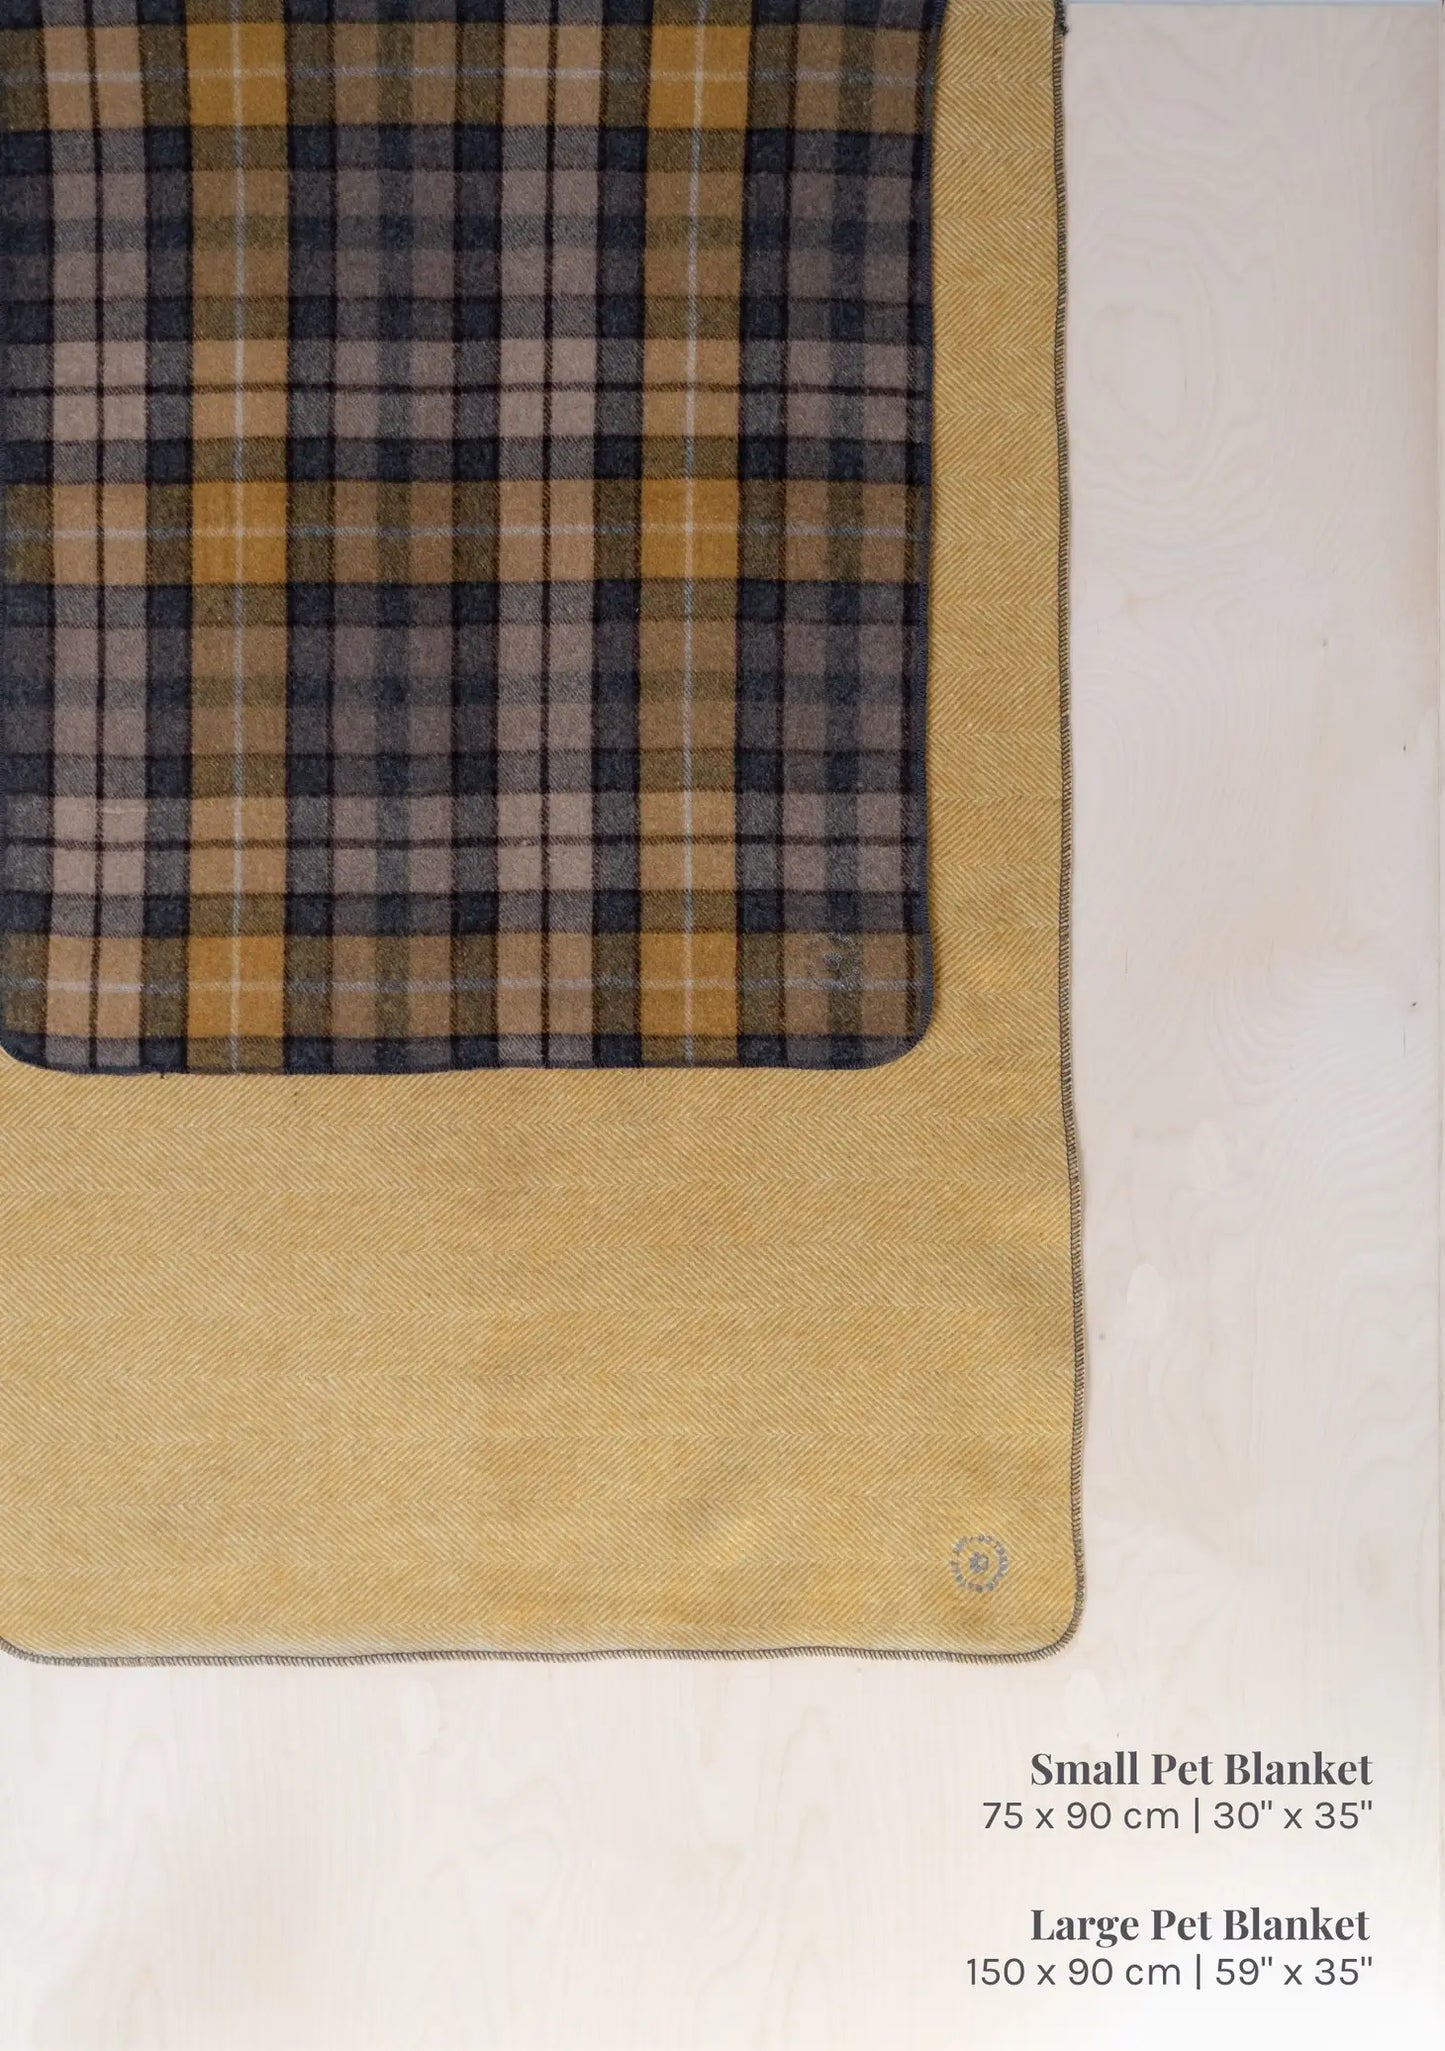 Recycled Wool Small Pet Blanket in Navy Herringbone